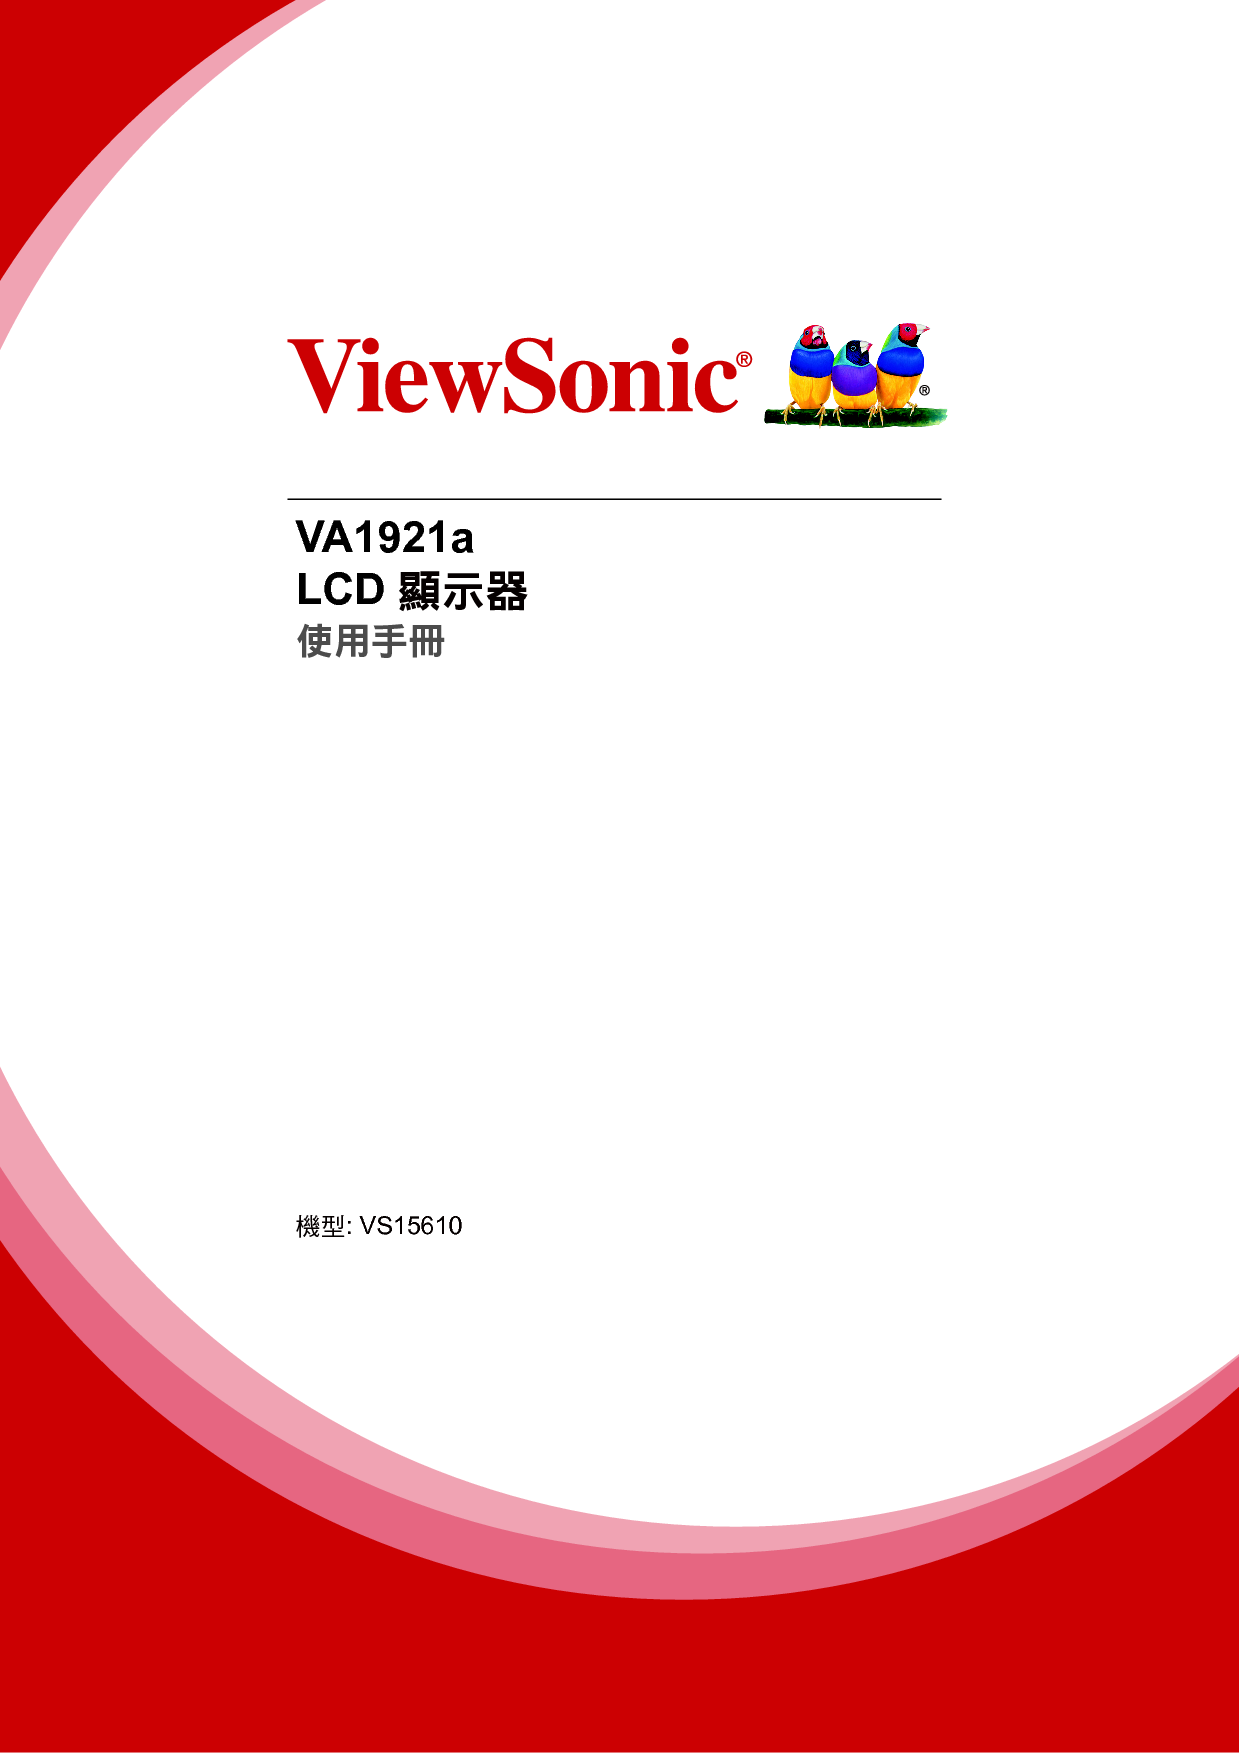 优派 ViewSonic VA1921a 繁体 使用手册 封面